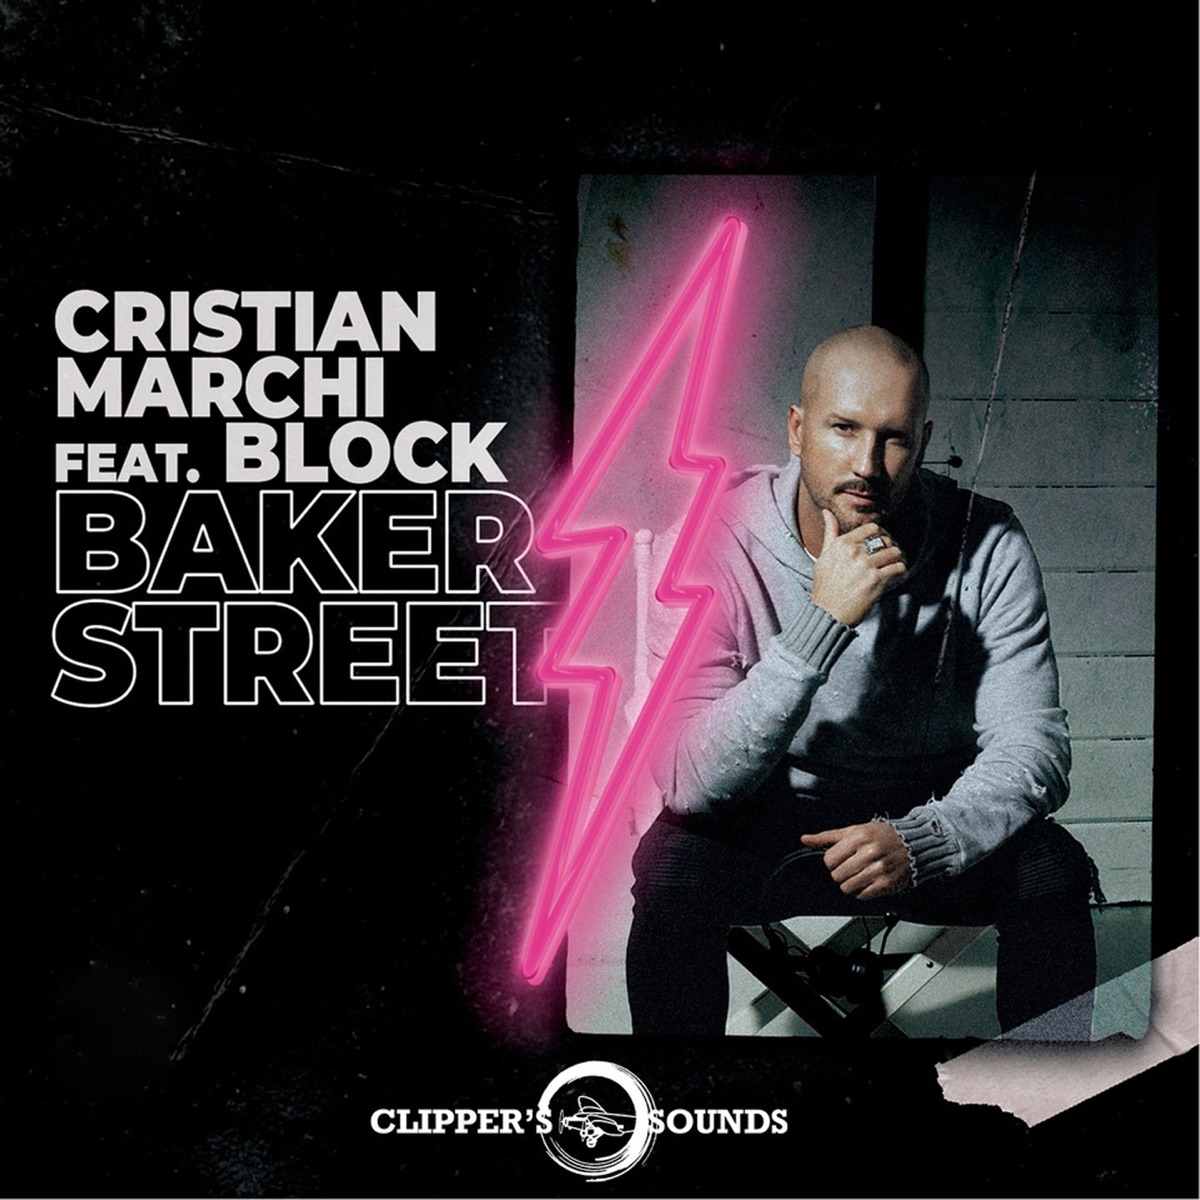 Baker Street (feat. Block) - Single de Cristian Marchi en iTunes